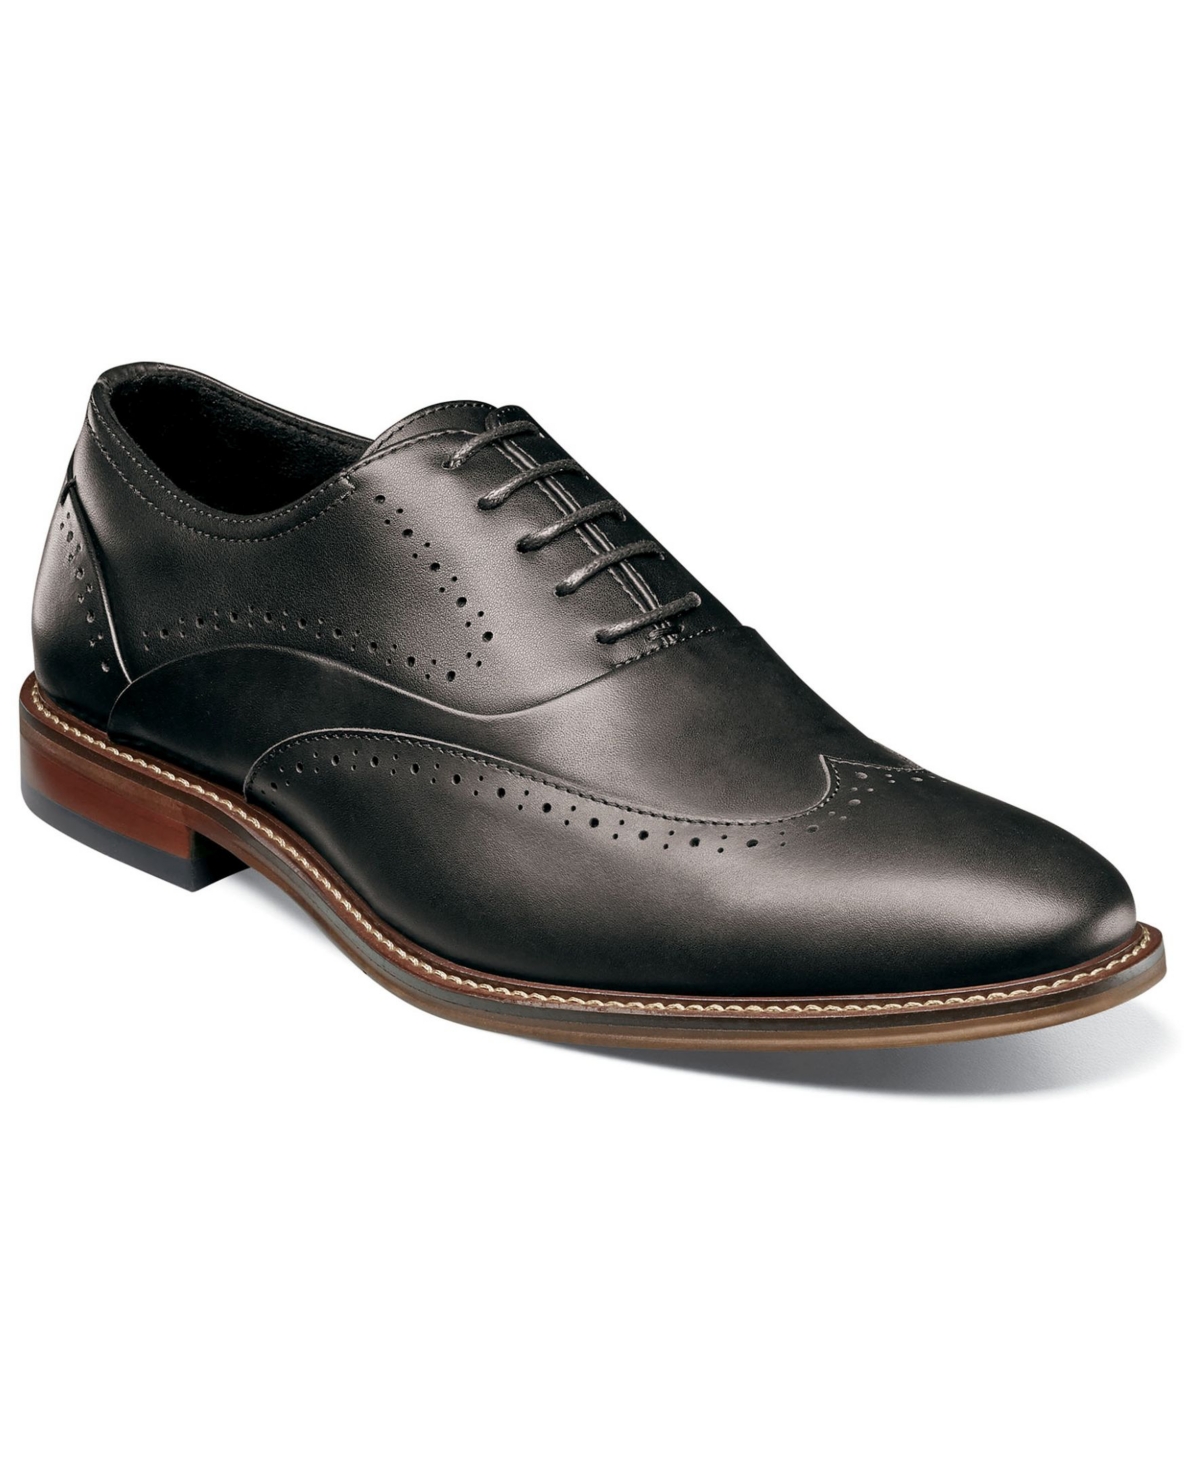 Men's Macarthur Leather Wingtip Oxford Shoe - Cognac